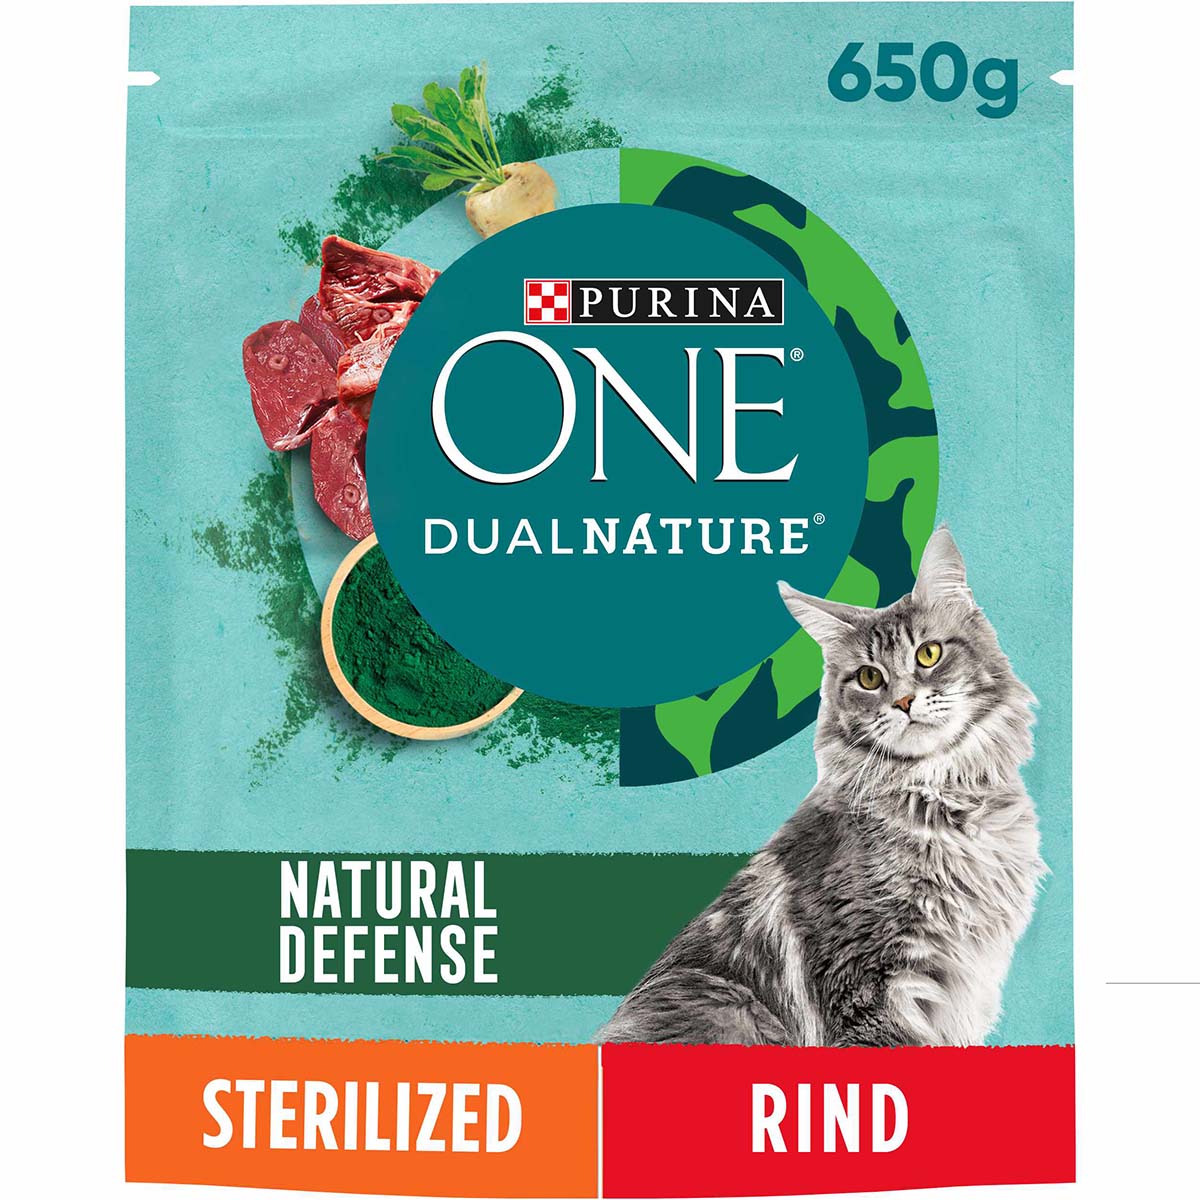 PURINA ONE Dual Nature kastrierte Katze Rind, Spirulina 650g von Purina One